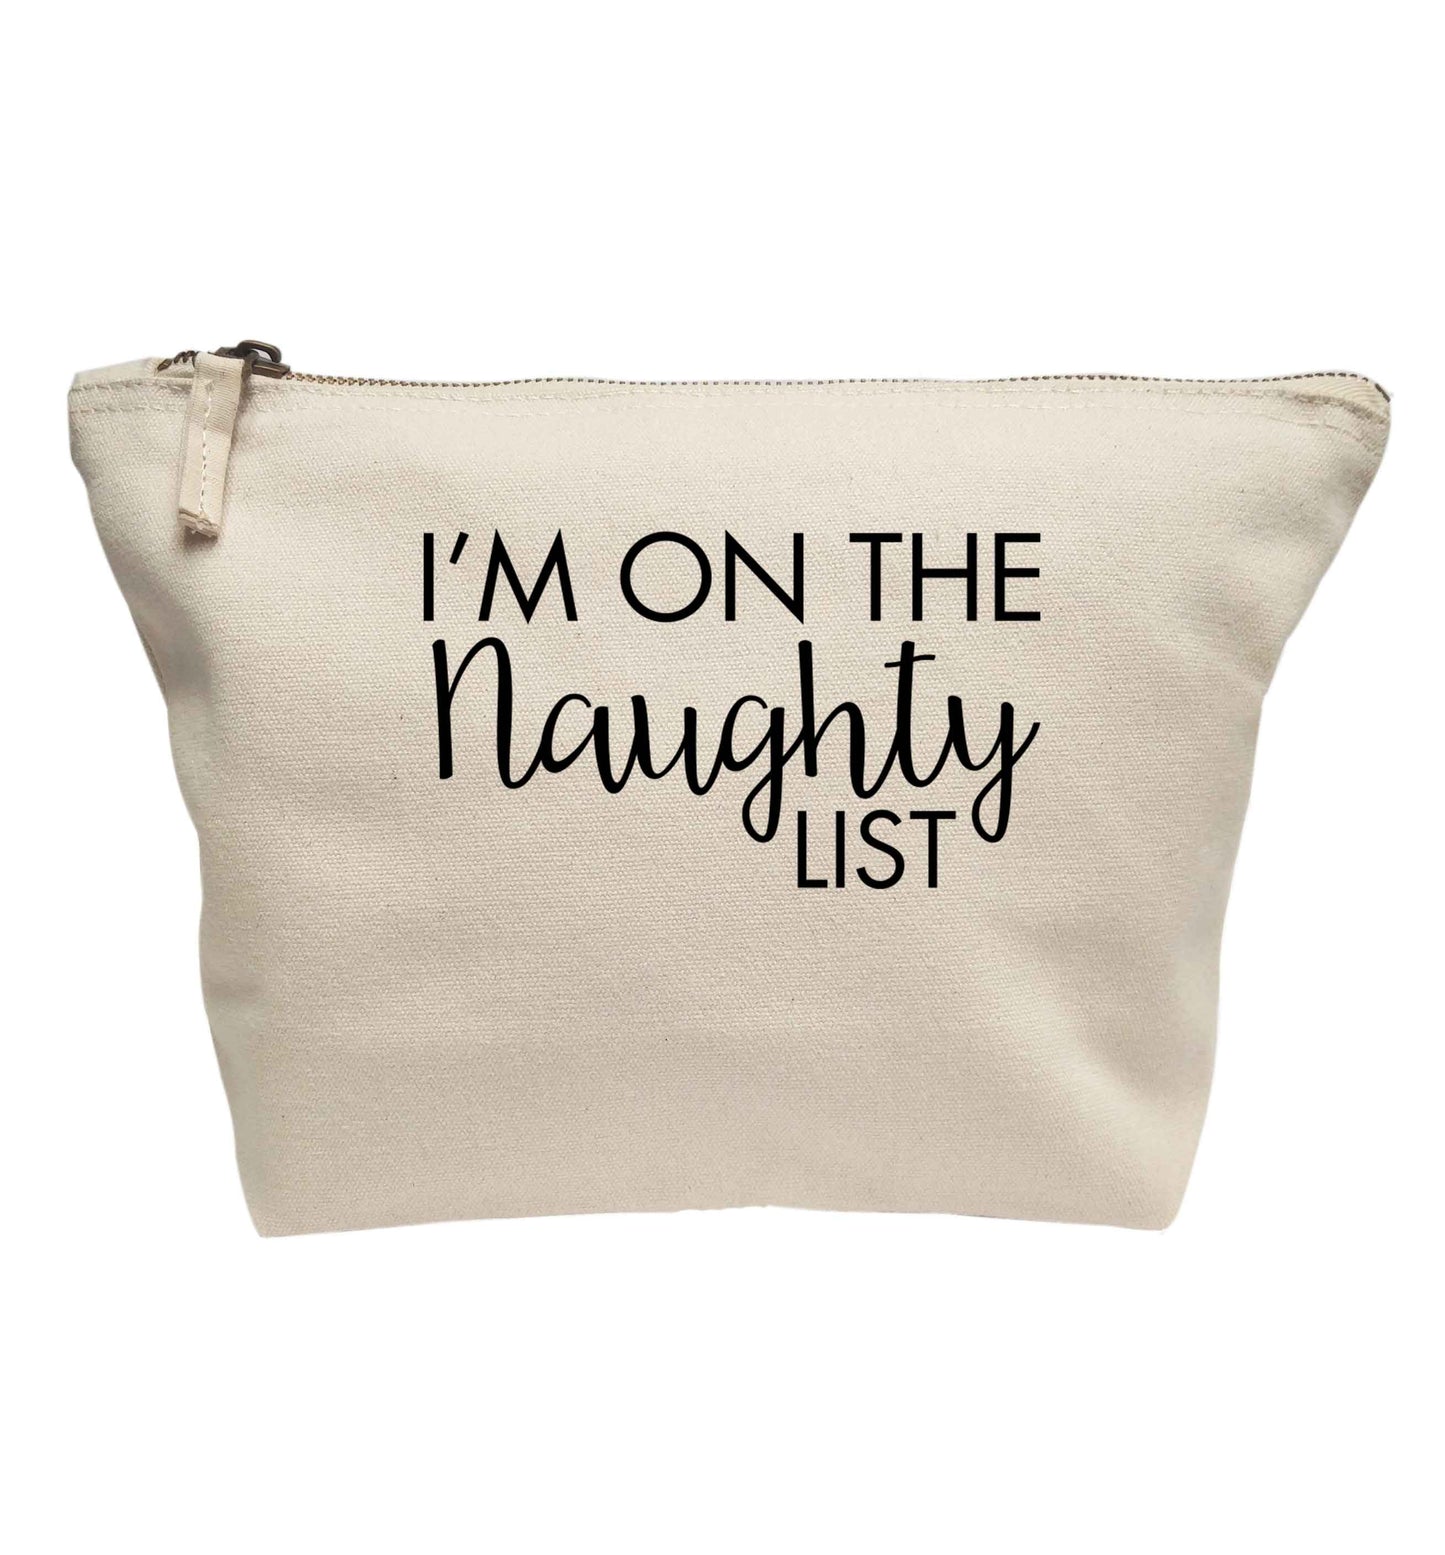 I'm on the naughty list | Makeup / wash bag